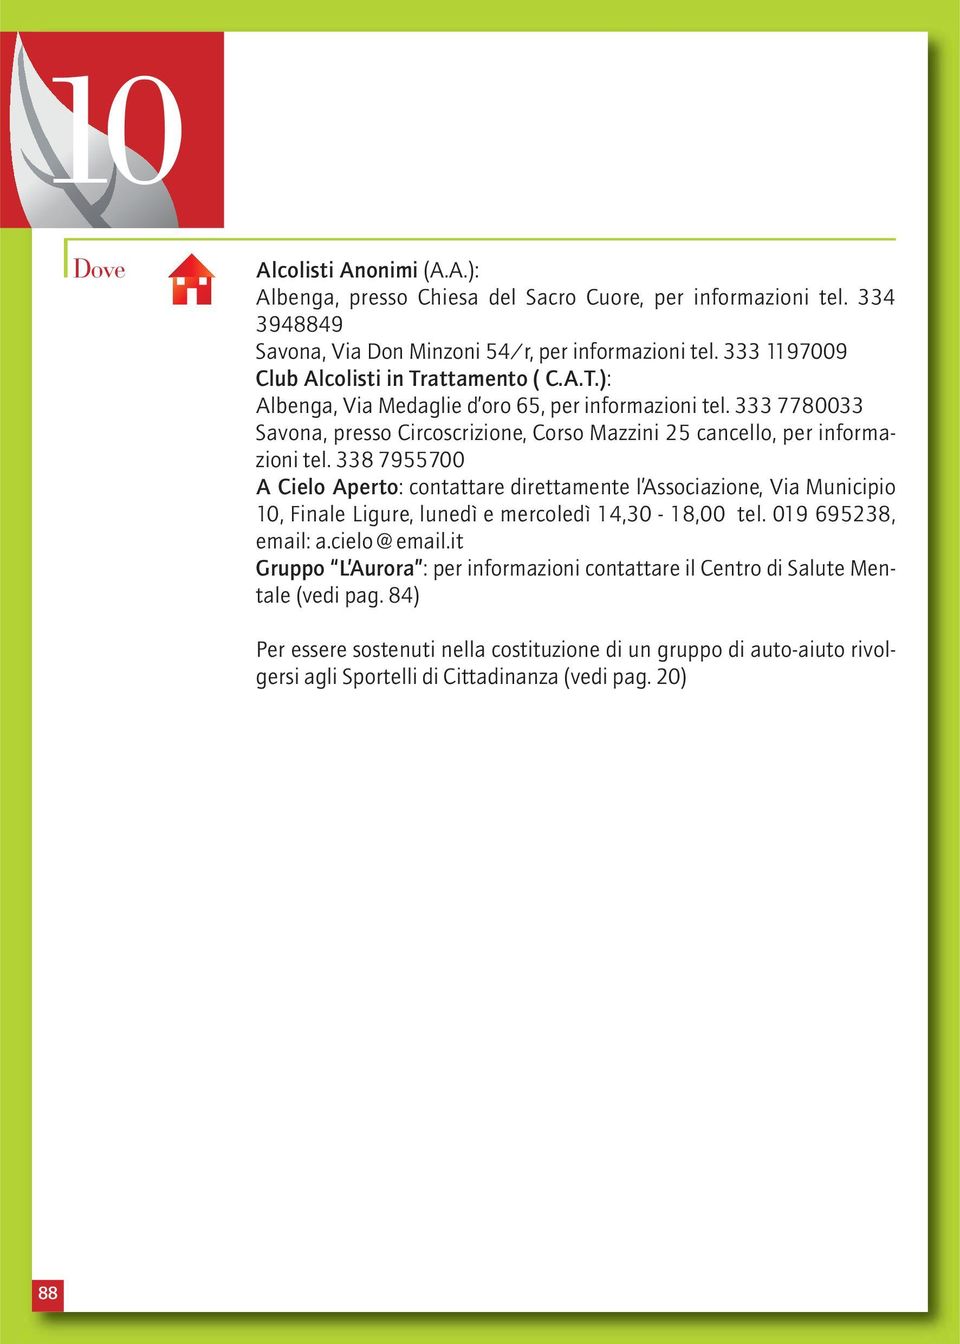 333 7780033 Savona, presso Circoscrizione, Corso Mazzini 25 cancello, per informazioni tel.